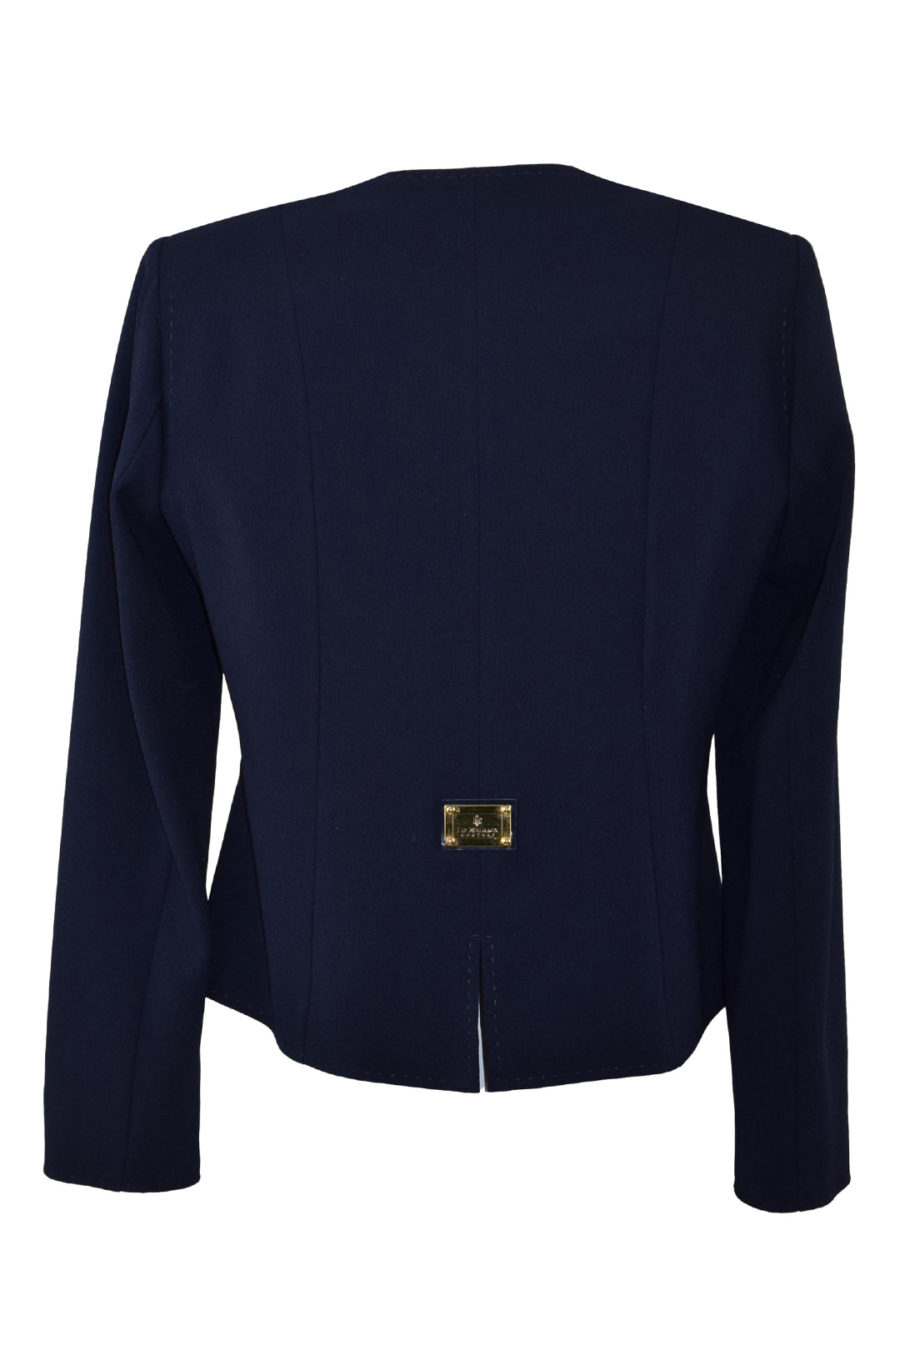 Jacke aus Georgette mit 6 Couture-Zierknöpfen und Drehverschlüssen, Langarm